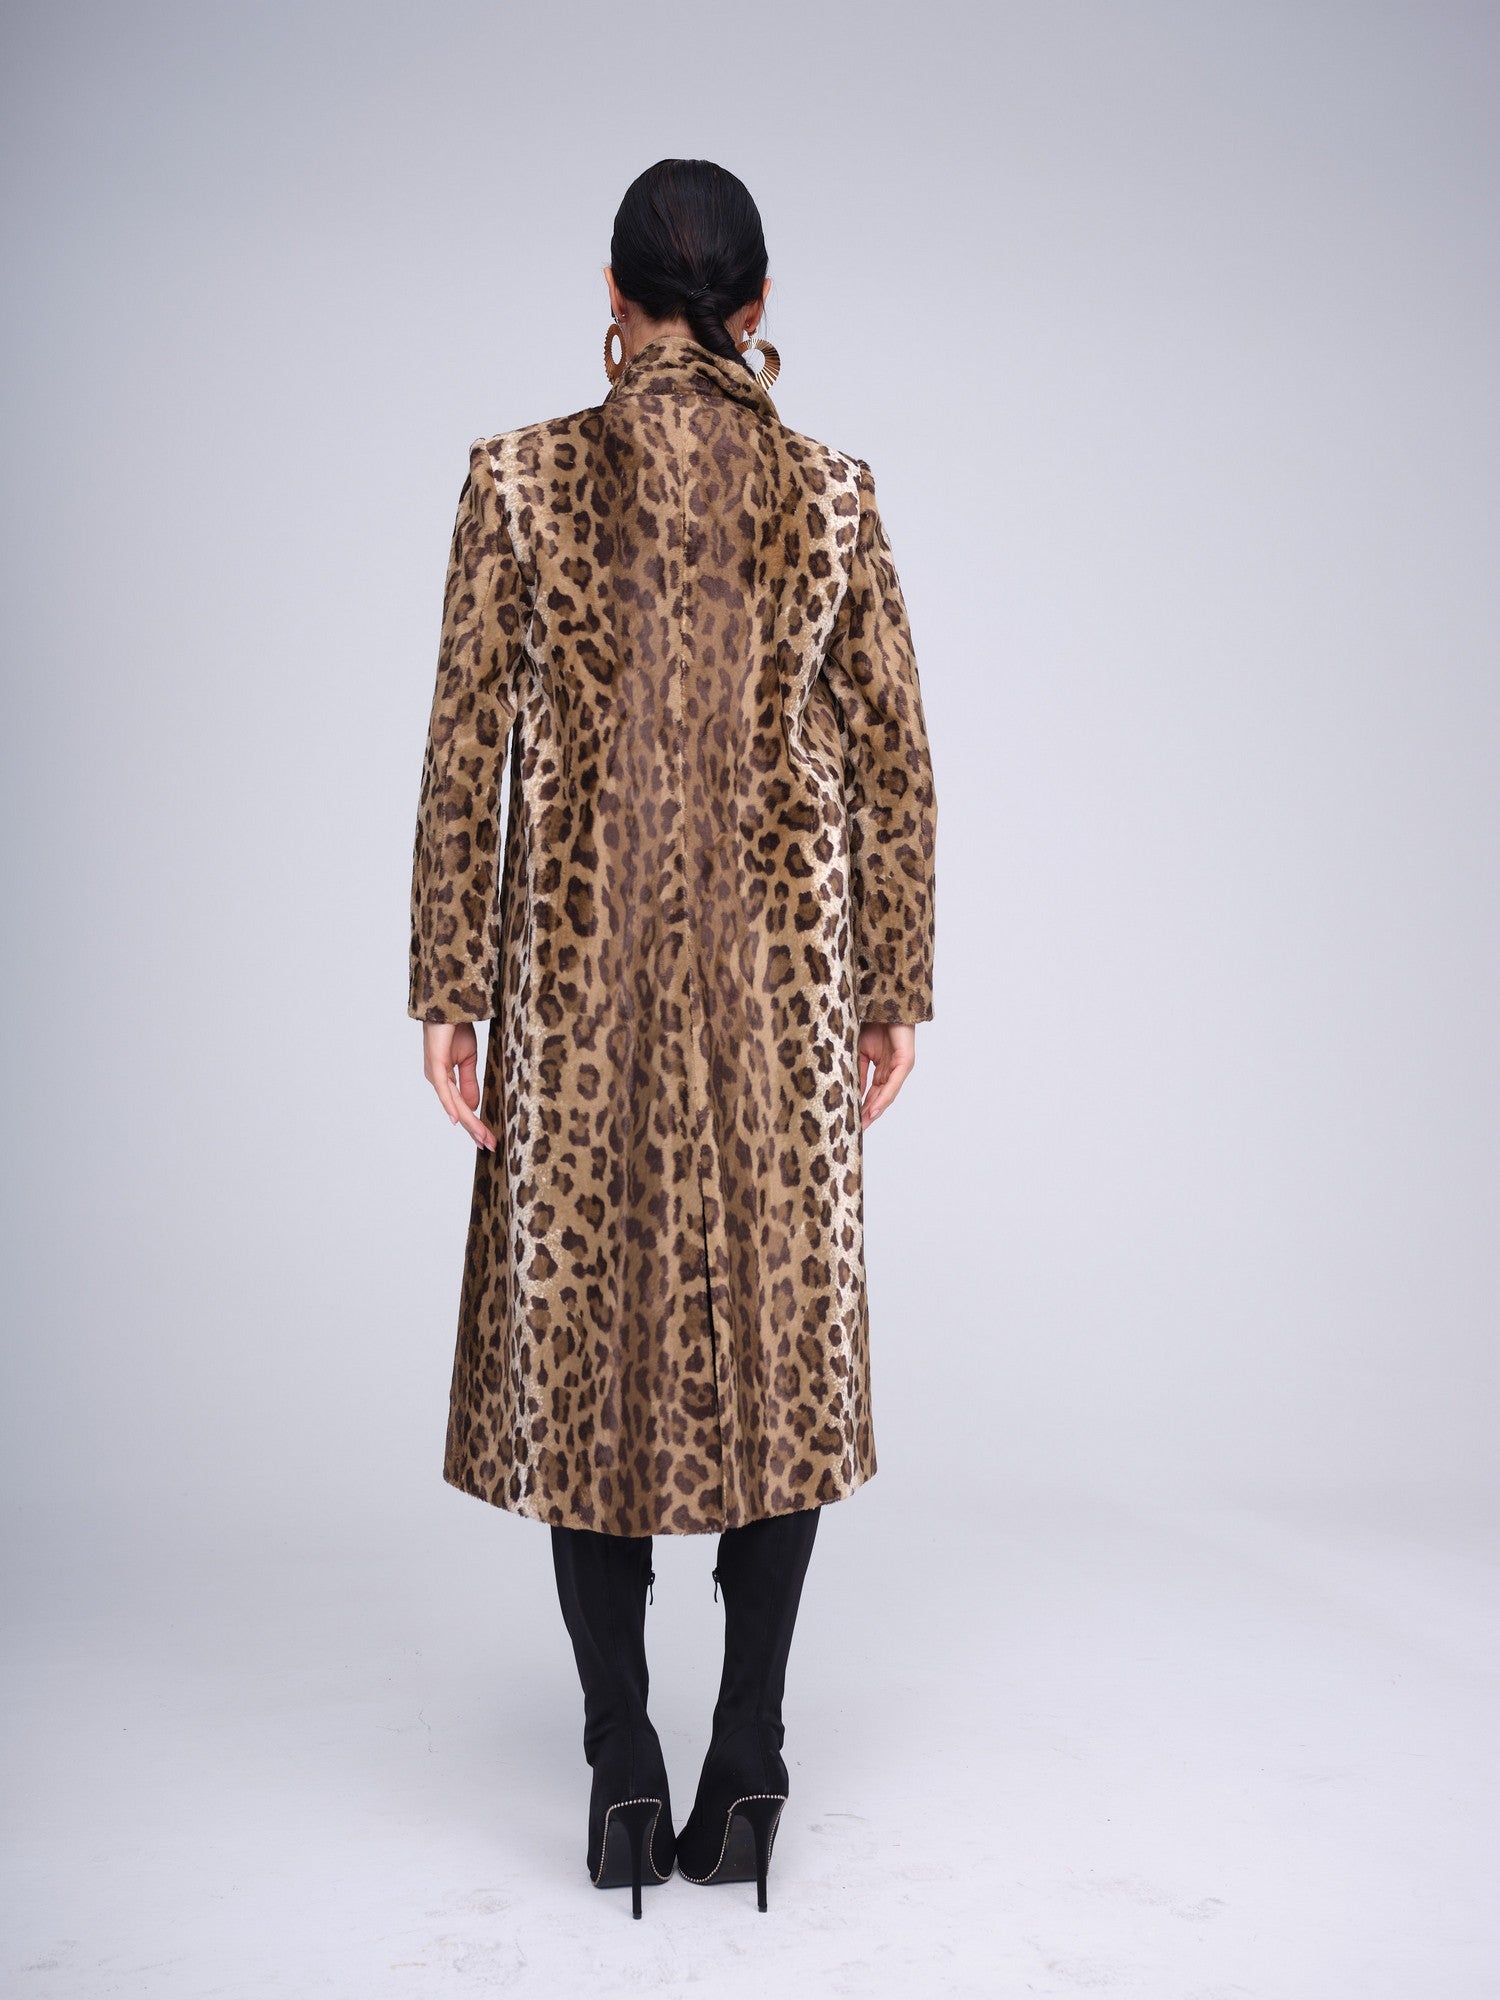 Leopard Coat Fashion M.O.V